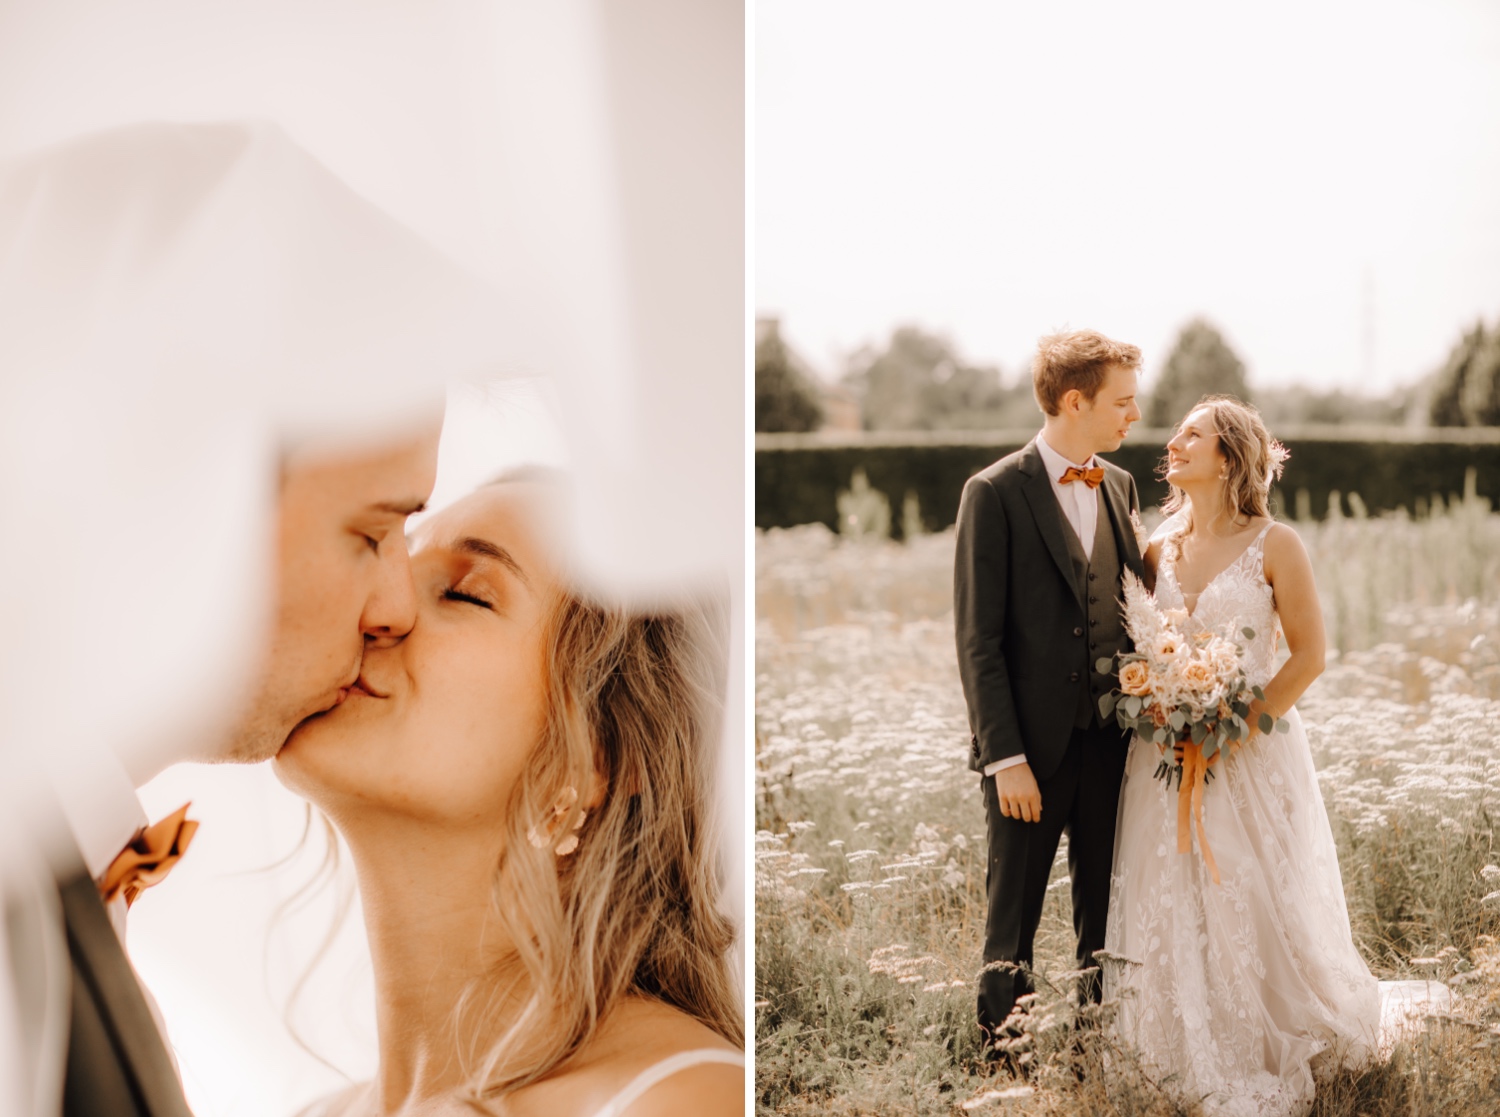 Huwelijksfotograaf Limburg - bruidspaar poseert tijdens fotoshoot